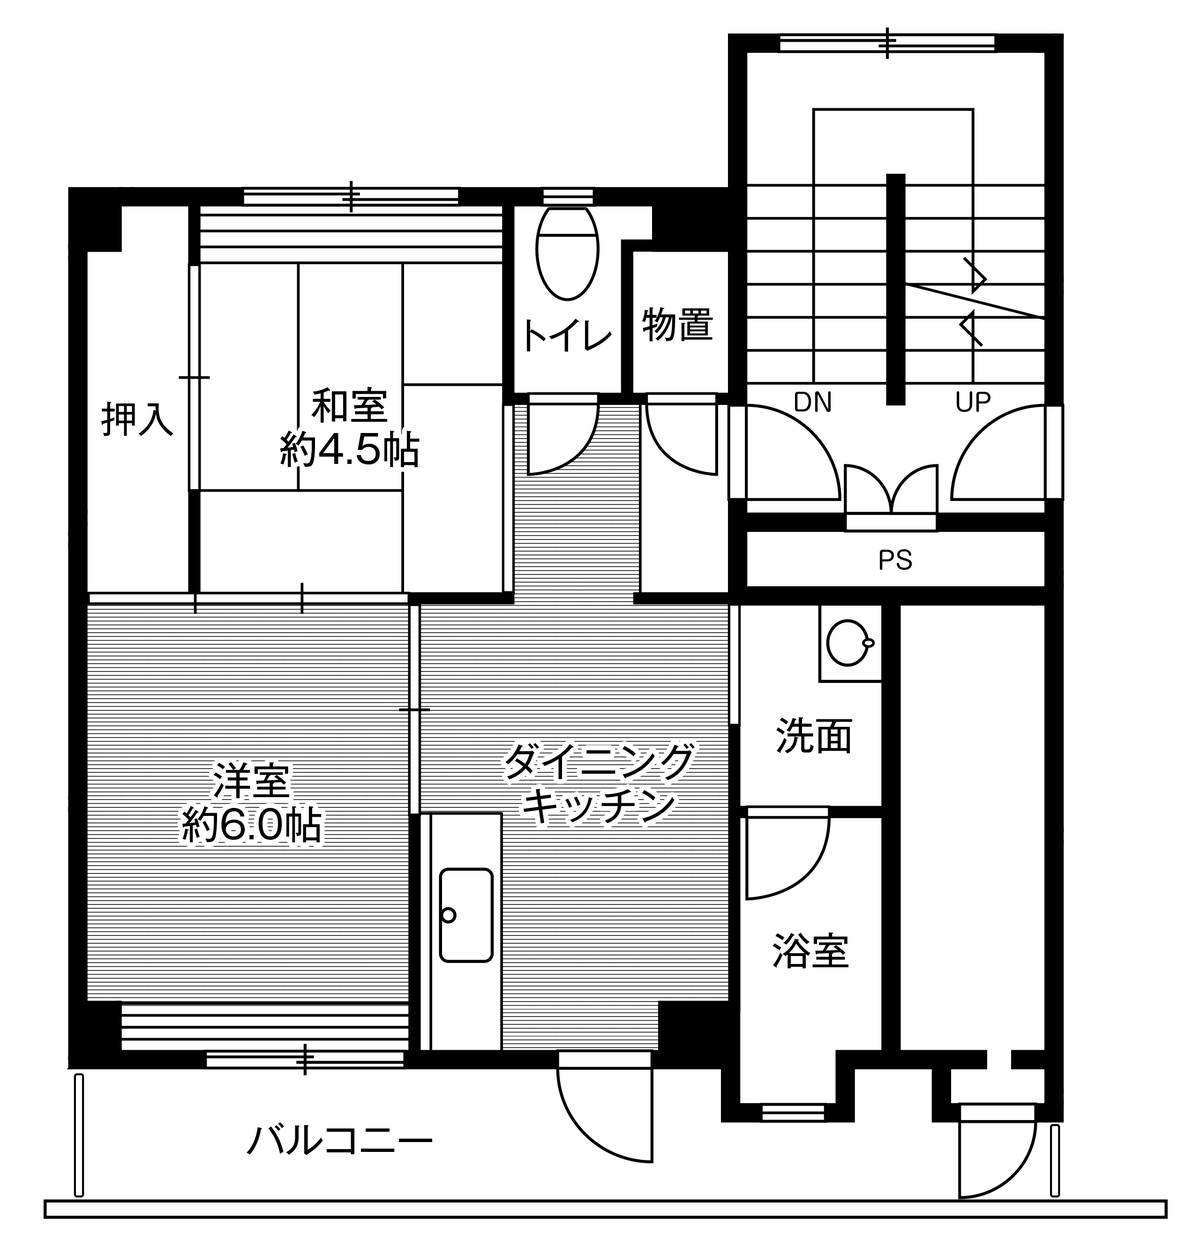 Sơ đồ phòng 2DK của Village House Unshu Hirata ở Izumo-shi